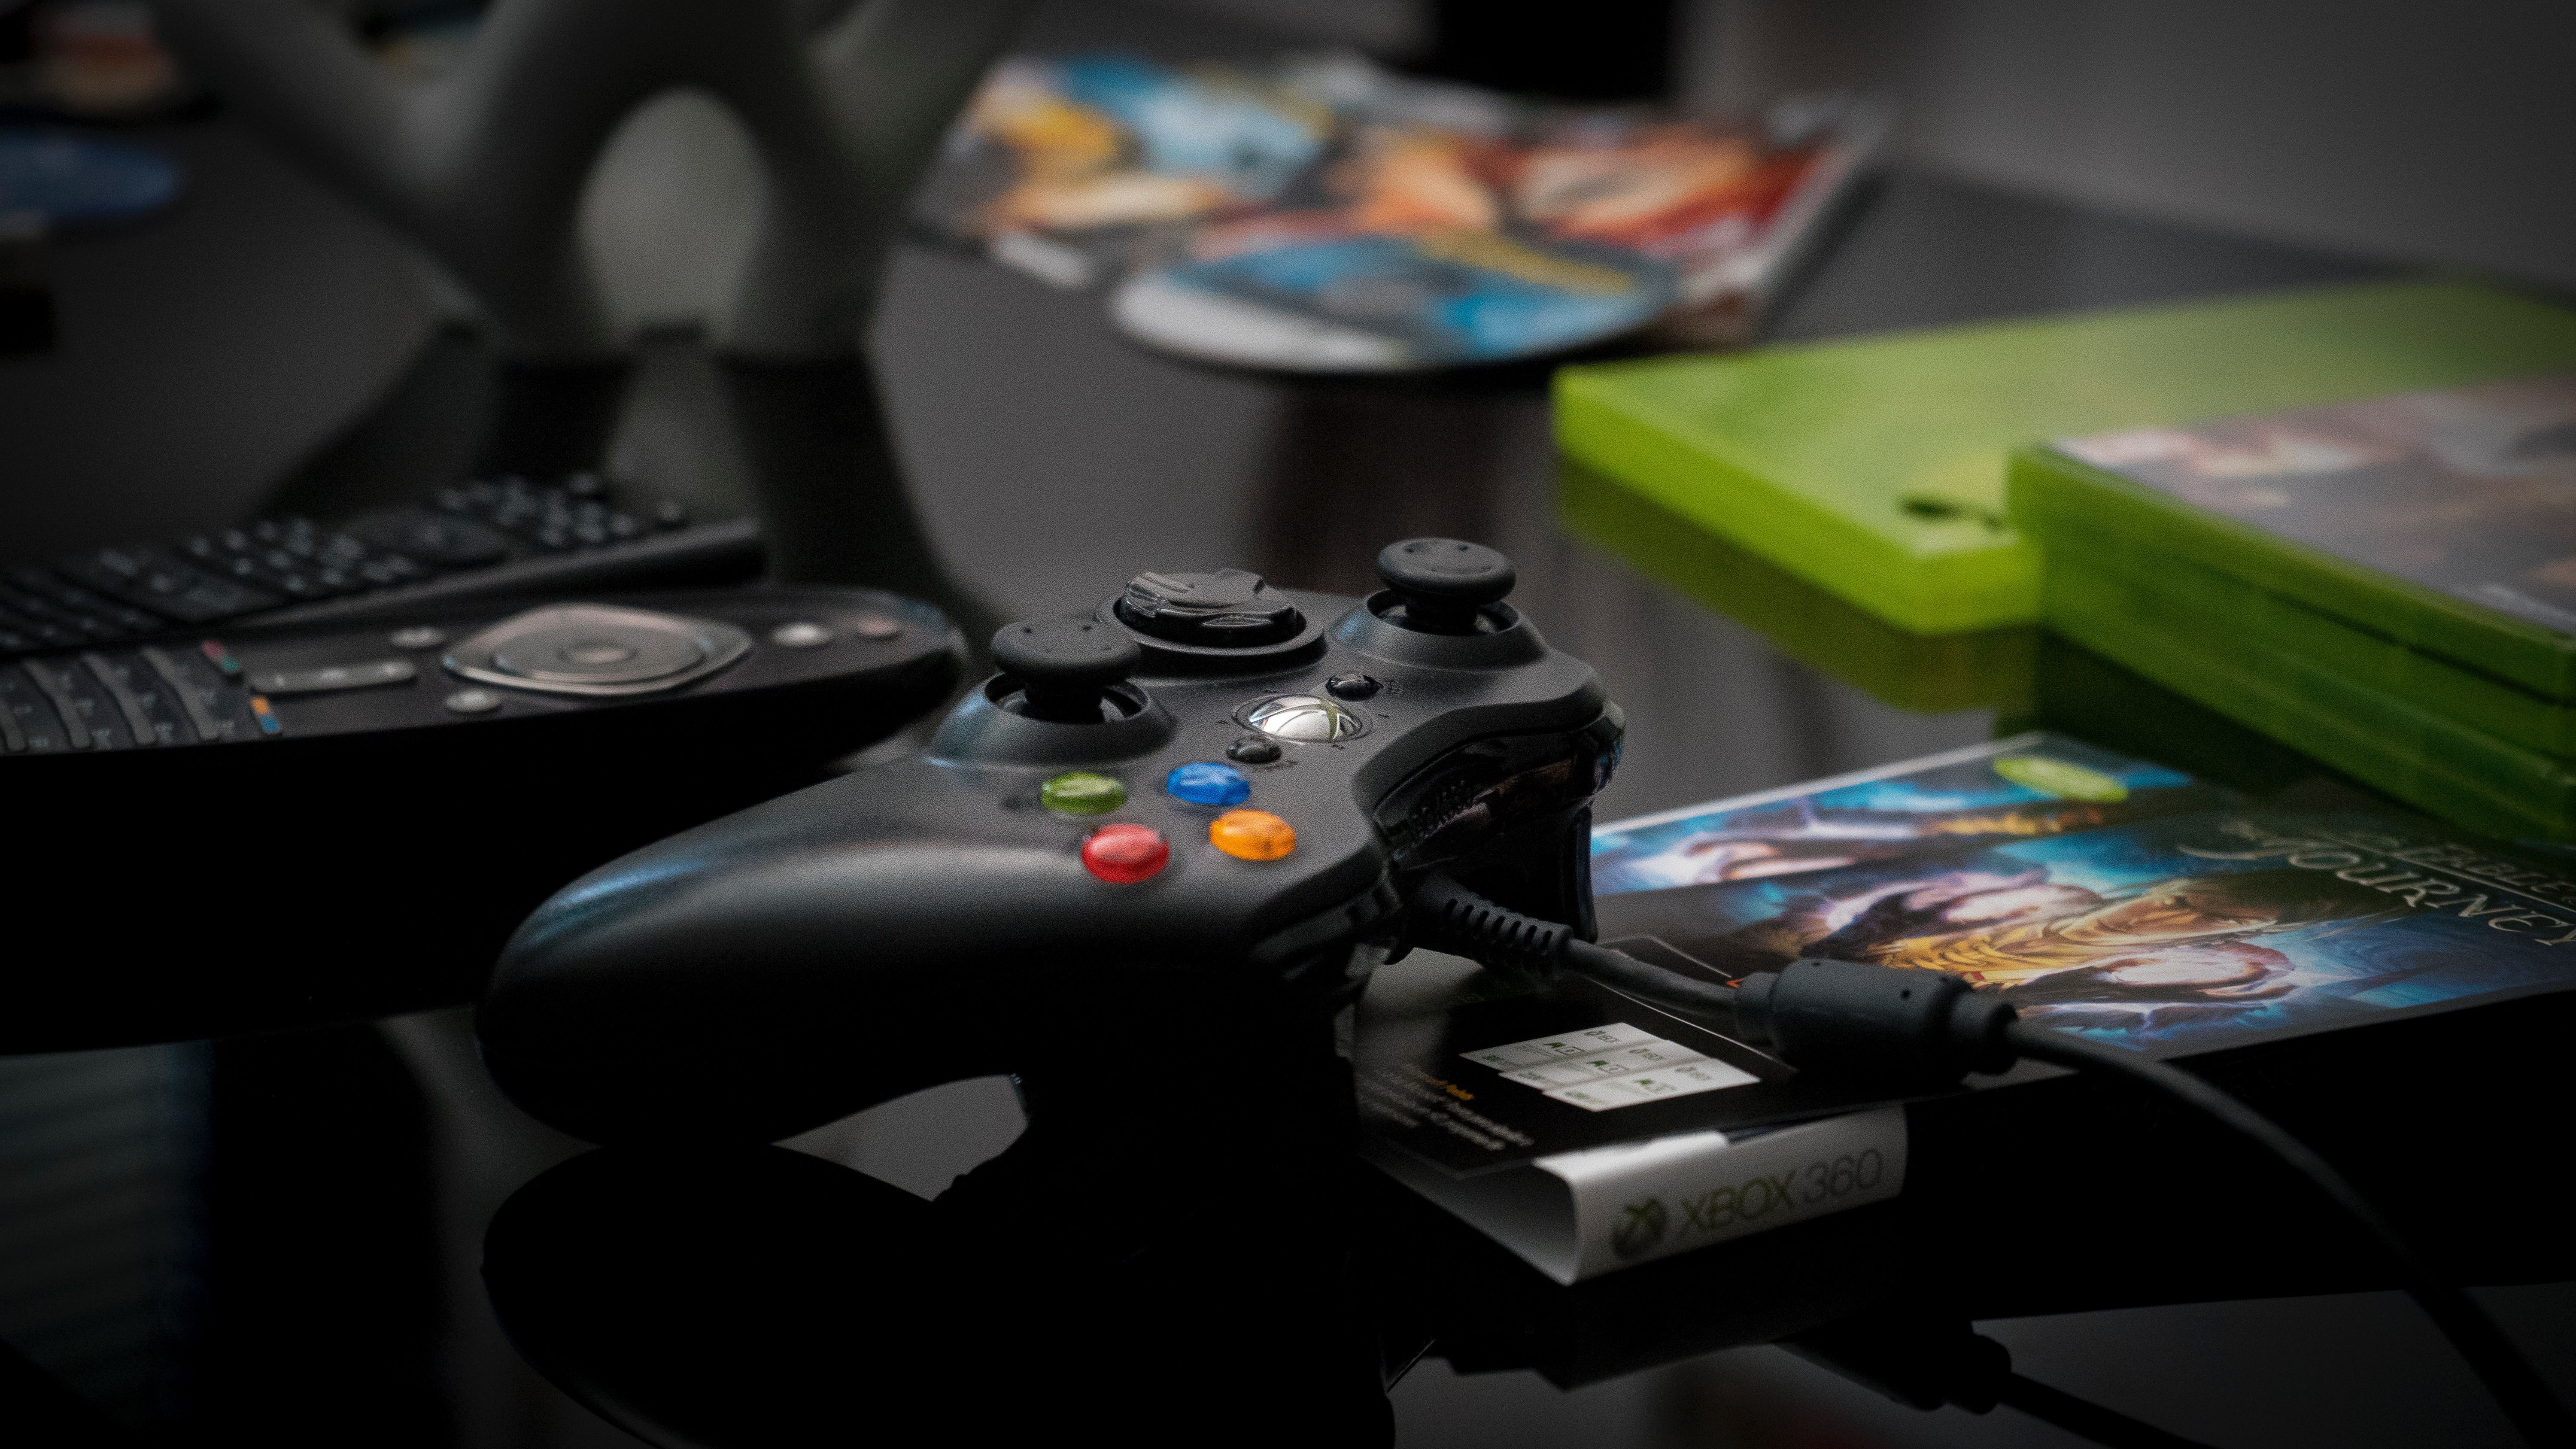 xCloud terá lista gigantesca de jogos disponíveis já no lançamento